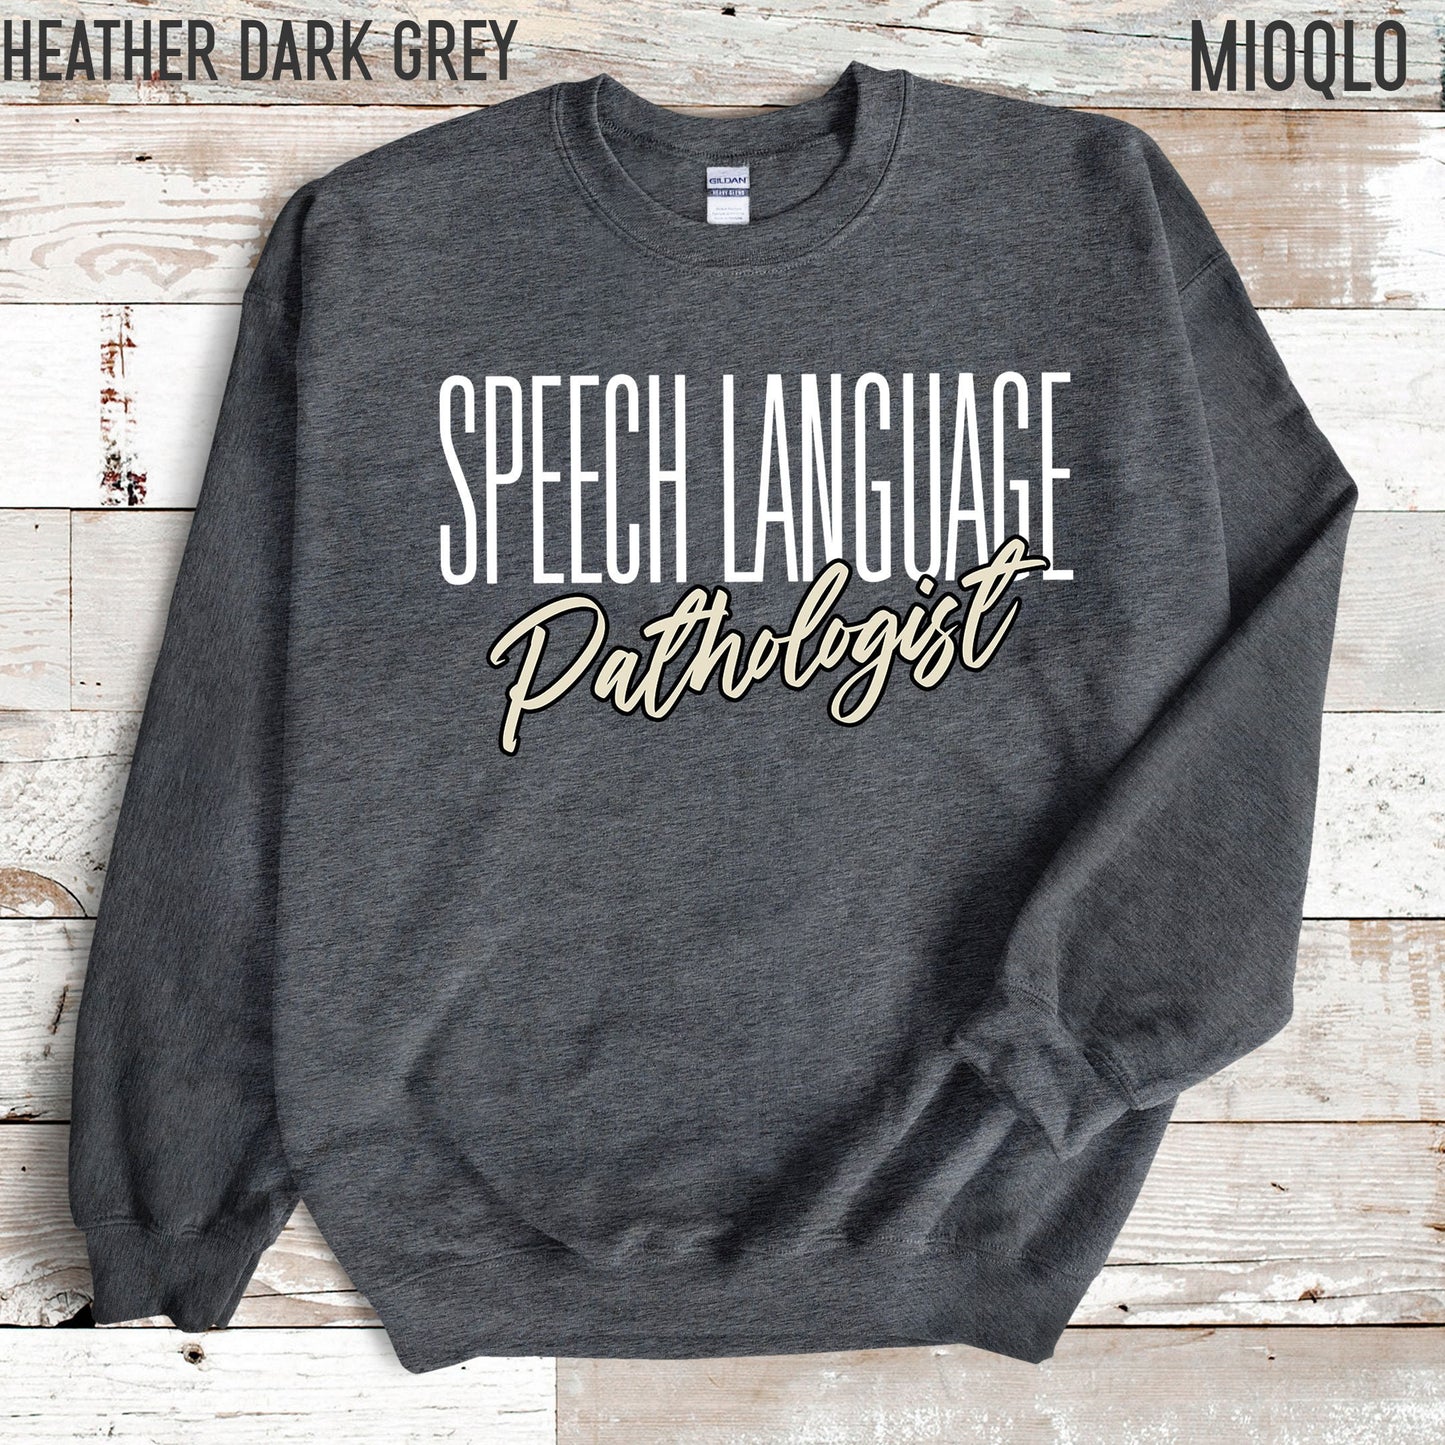 Speech Language Pathologist Sweatshirt, Speech Therapy Sweater, Speech Language Pathologist Gift, Speech Pathology SLPA Therapist, SLP Shirt